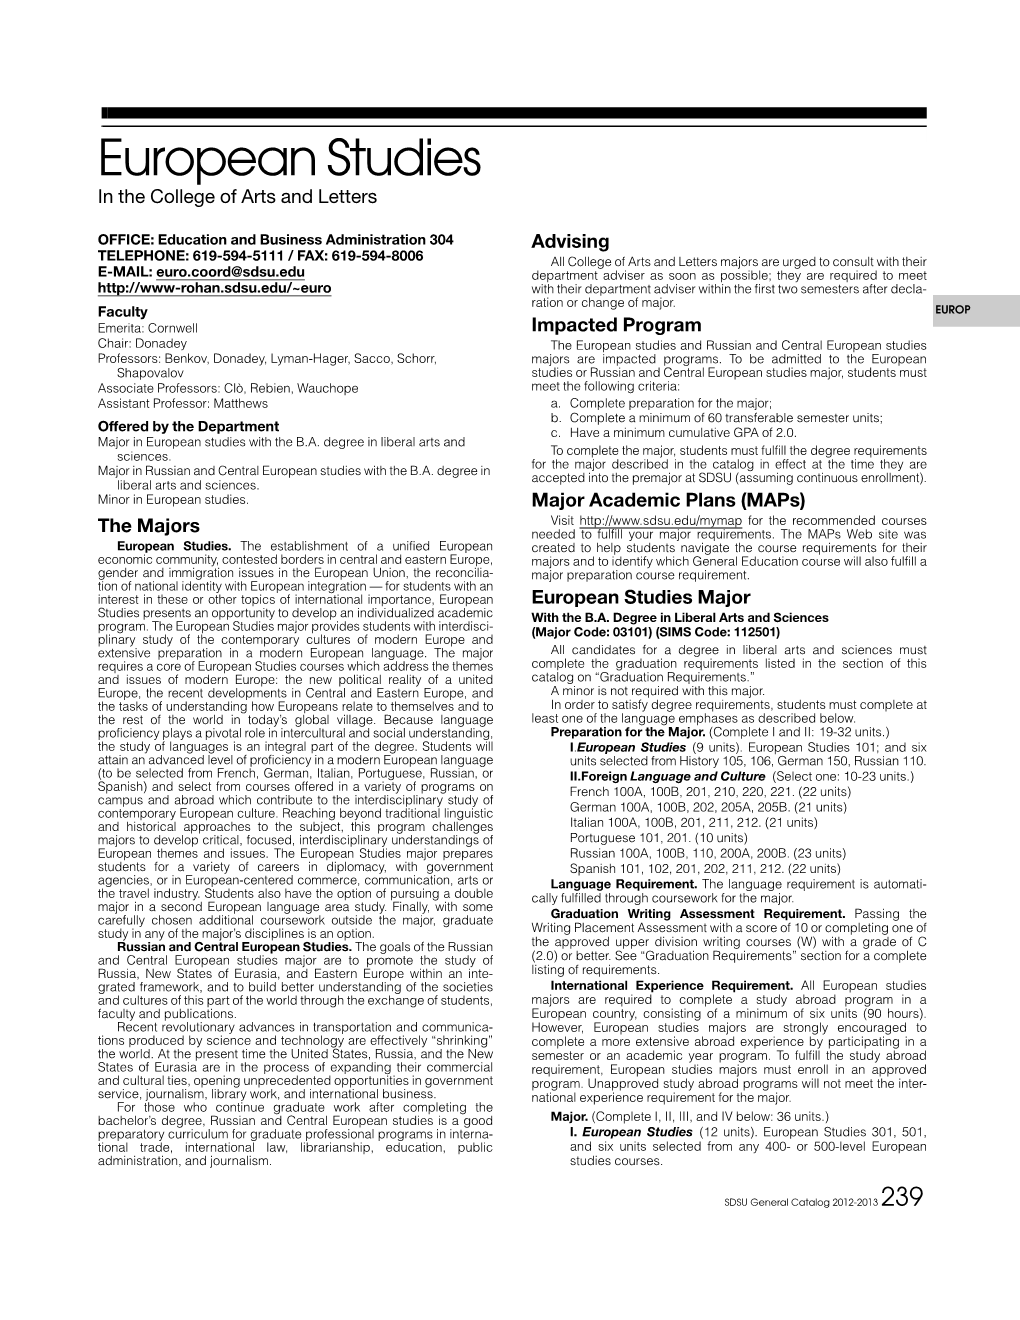 European Studies.Pdf